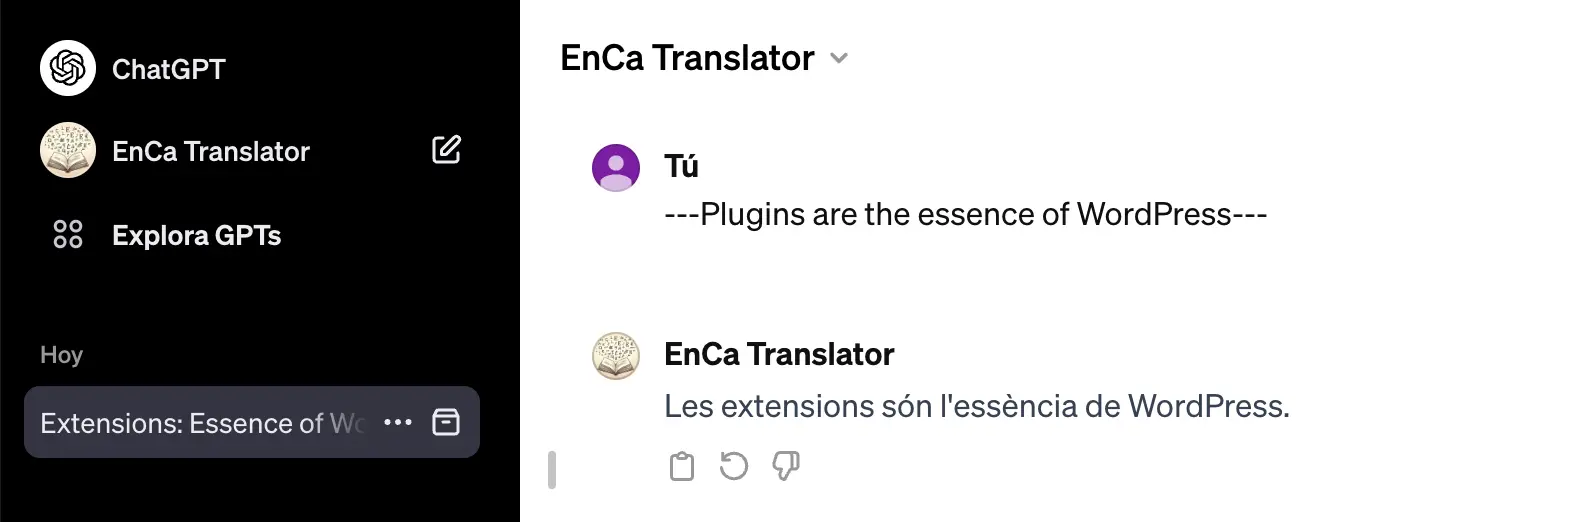 ChatGPT Assistant translator exemple traducció